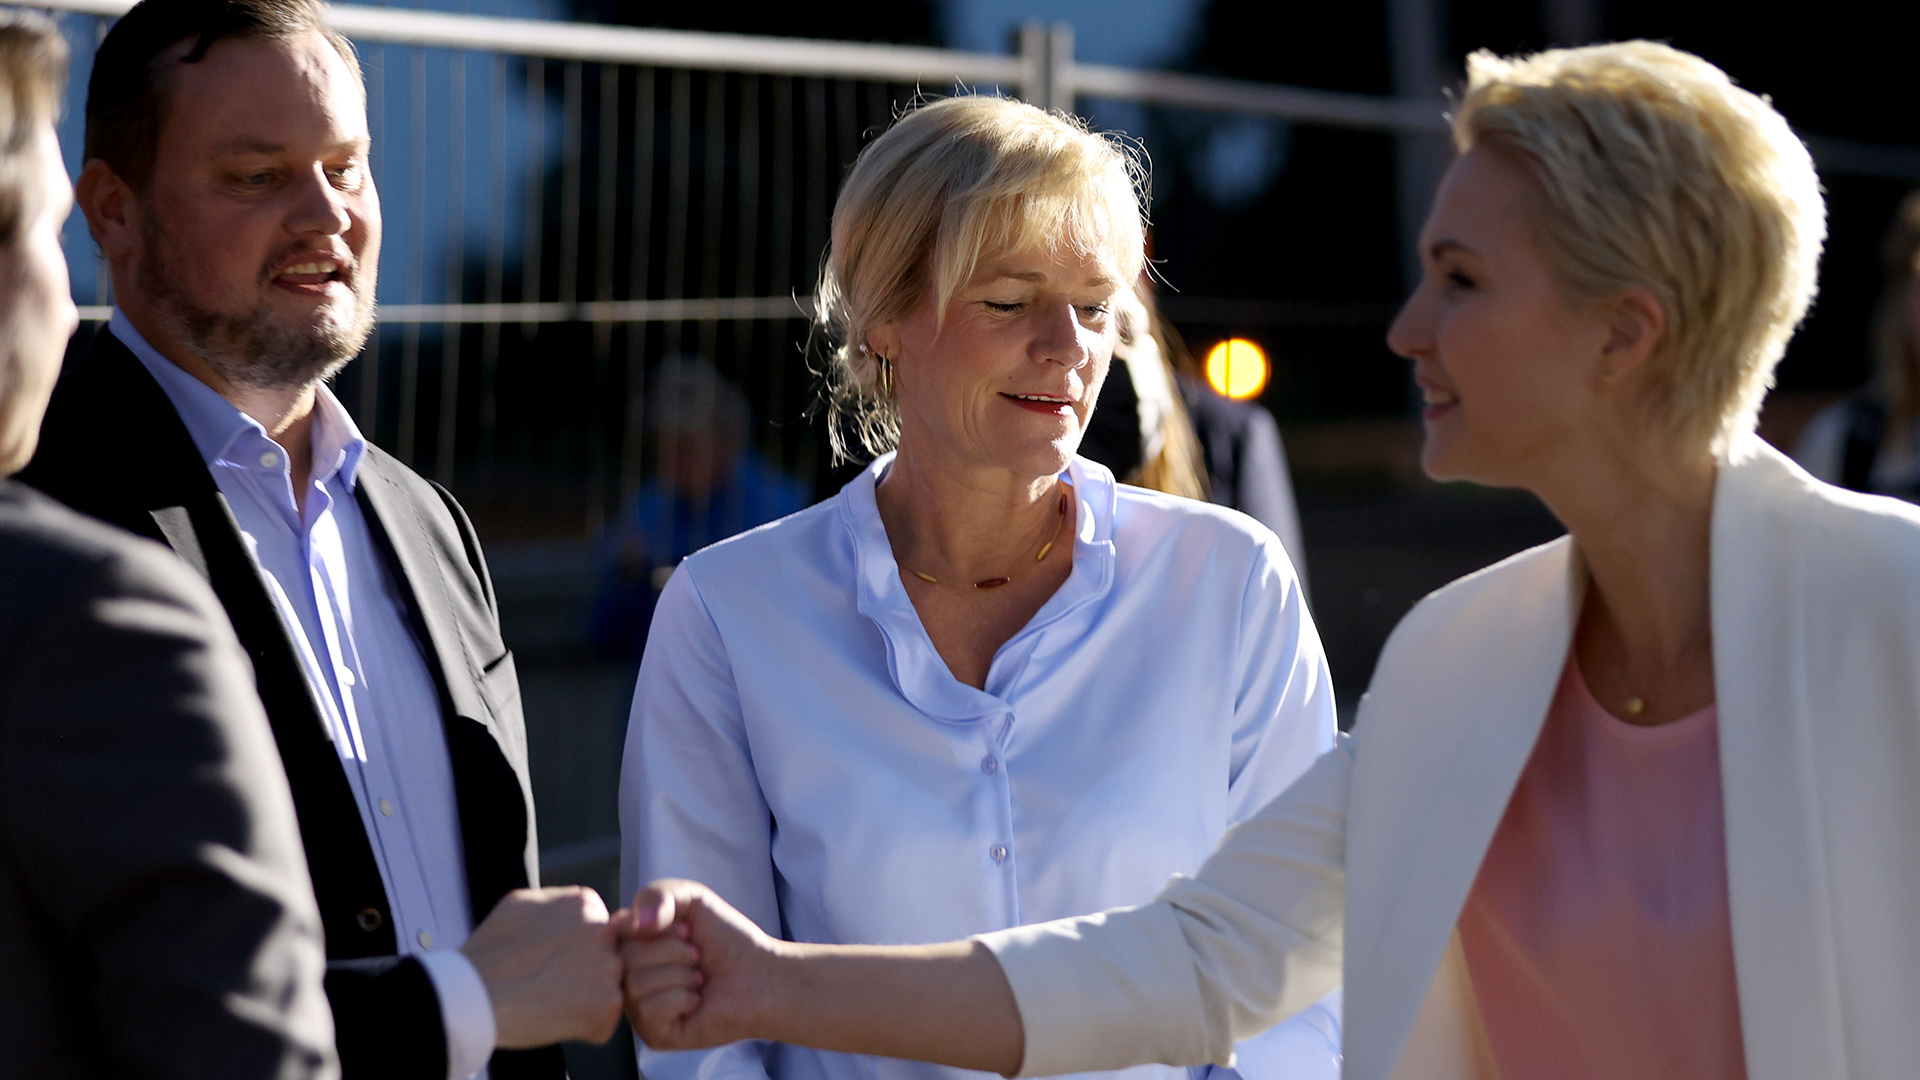  Simone Oldenburg steht zwischen Rene Domke (links) und Manuela Schwesig (rechts) | dpa